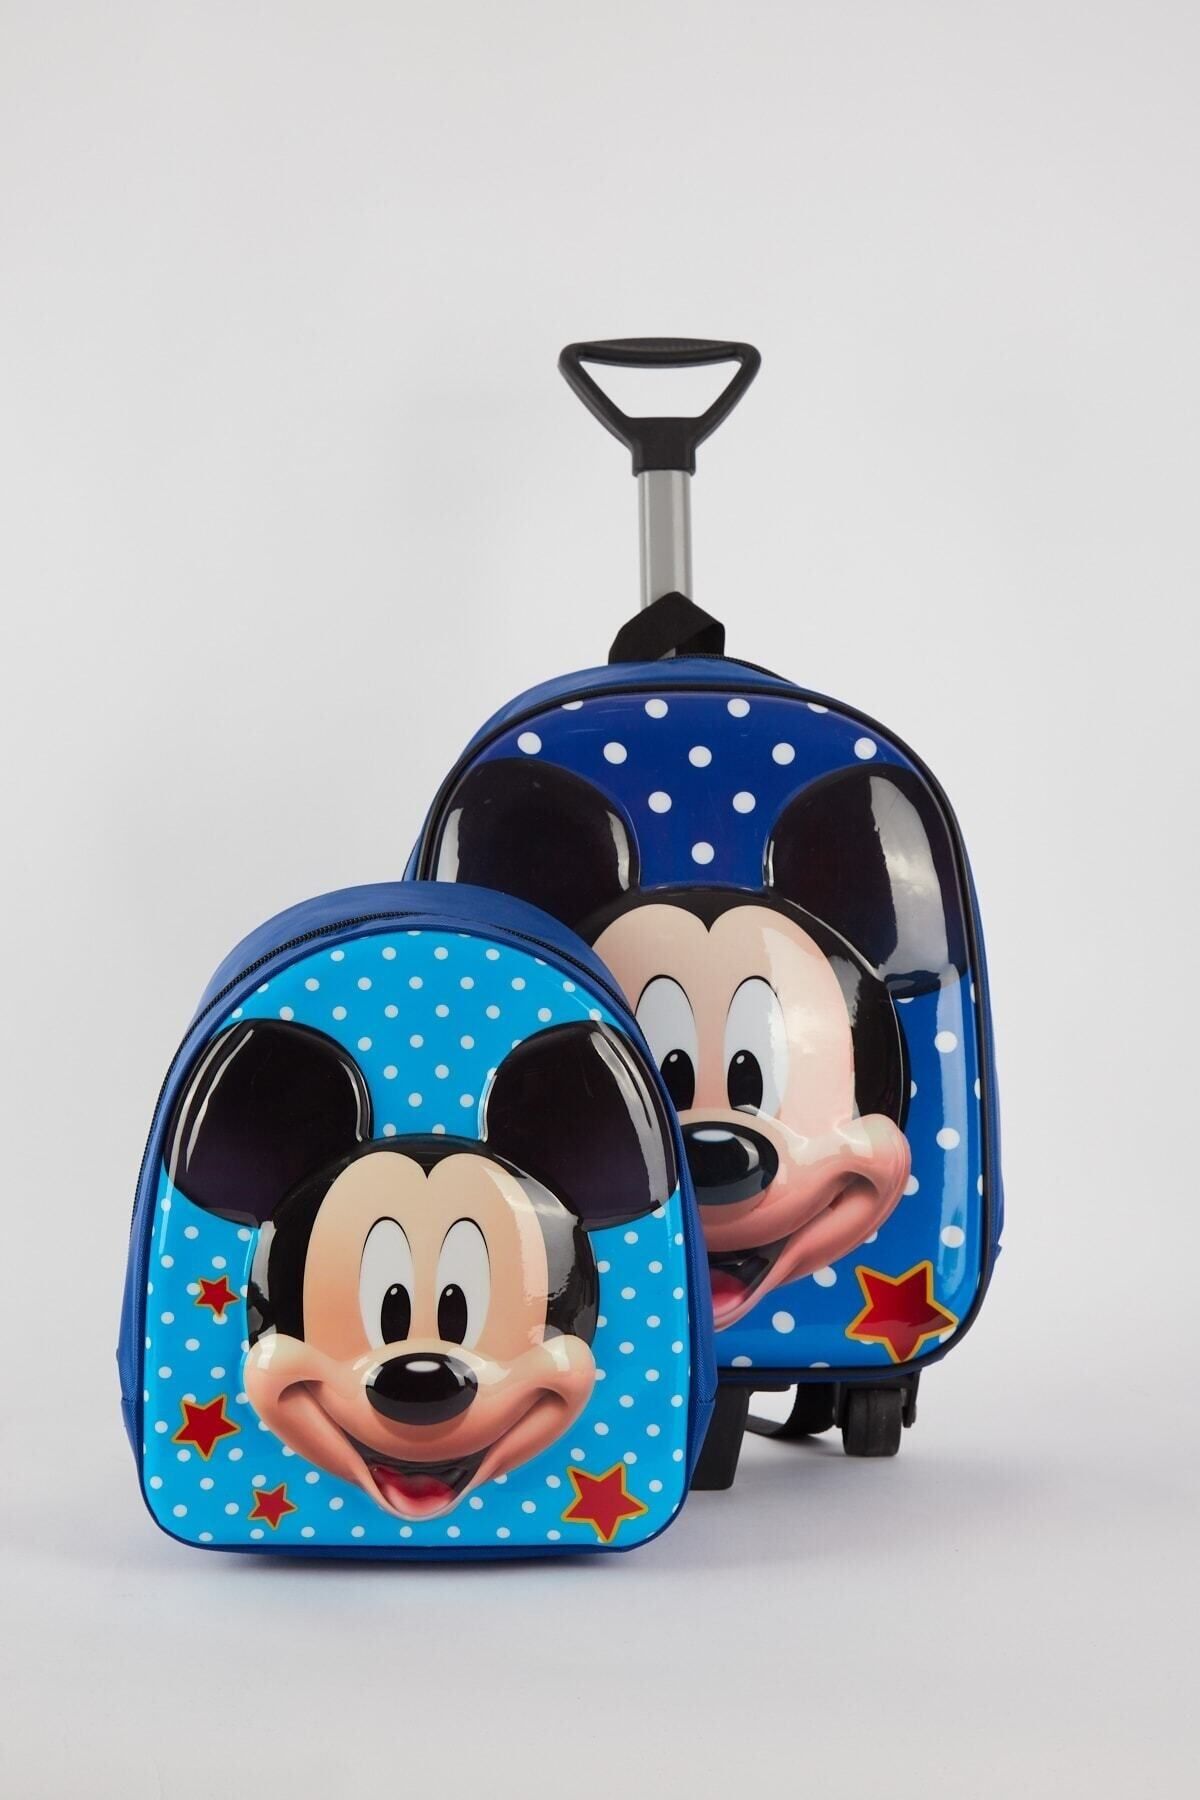 Ezem Store Mickey Mouse Çekçekli Anaokulu Çantası + Mini Mickey Mause Sırt Çantası Ikili Takım